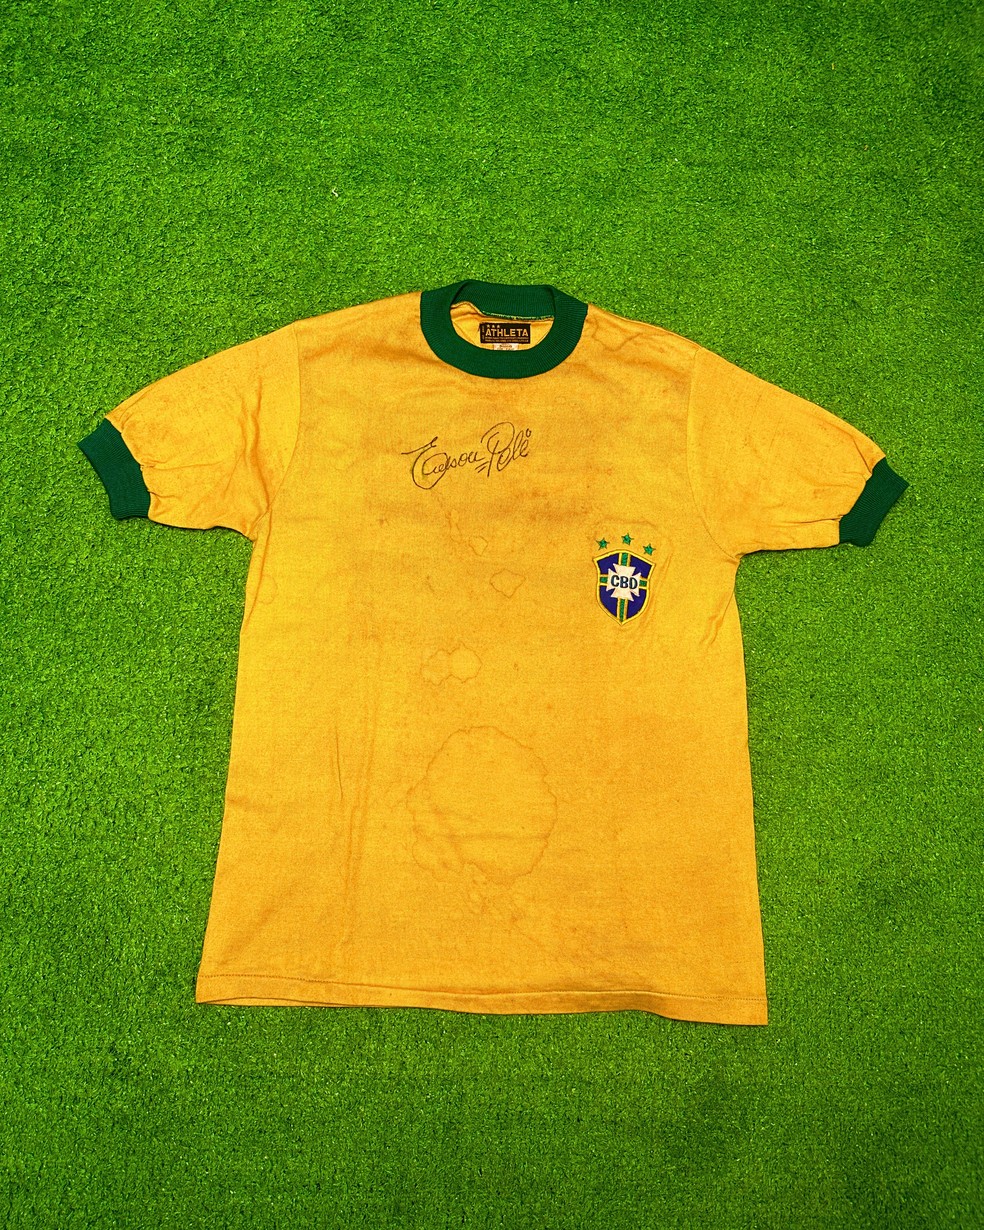 Camisa da Seleção Brasileira de 1971 assinada por Pelé — Foto: Divulgação/Play for a Cause